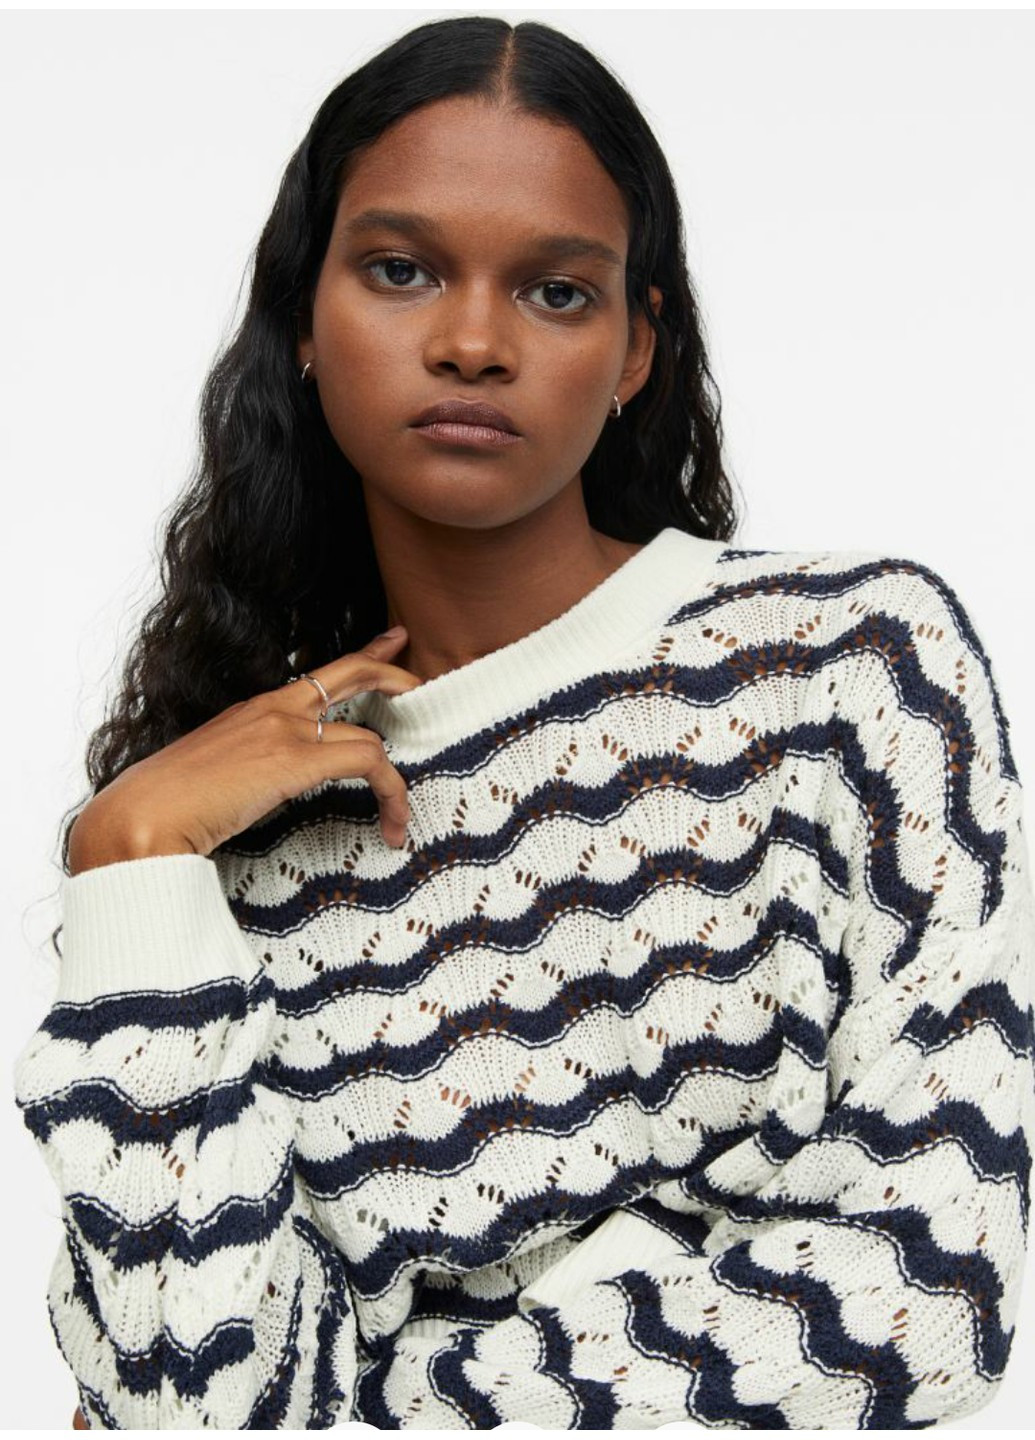 Молочный демисезонный женский ажурный свитер н&м (56134) xs молочный H&M